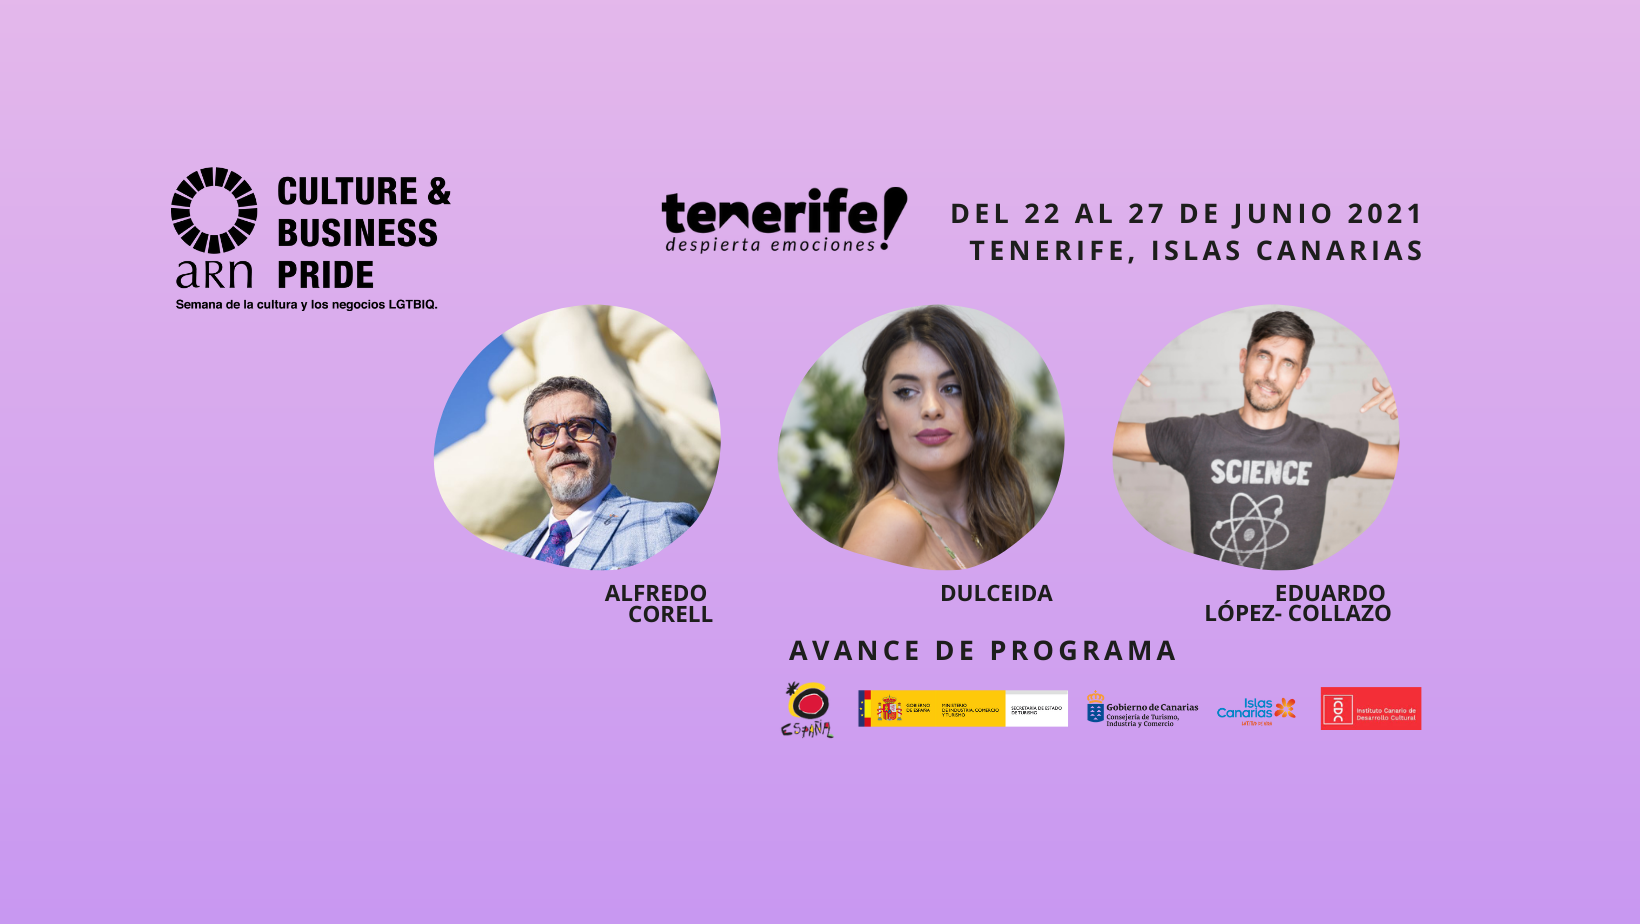 Dulceida participará en el  ARN Business & Pride en Tenerife